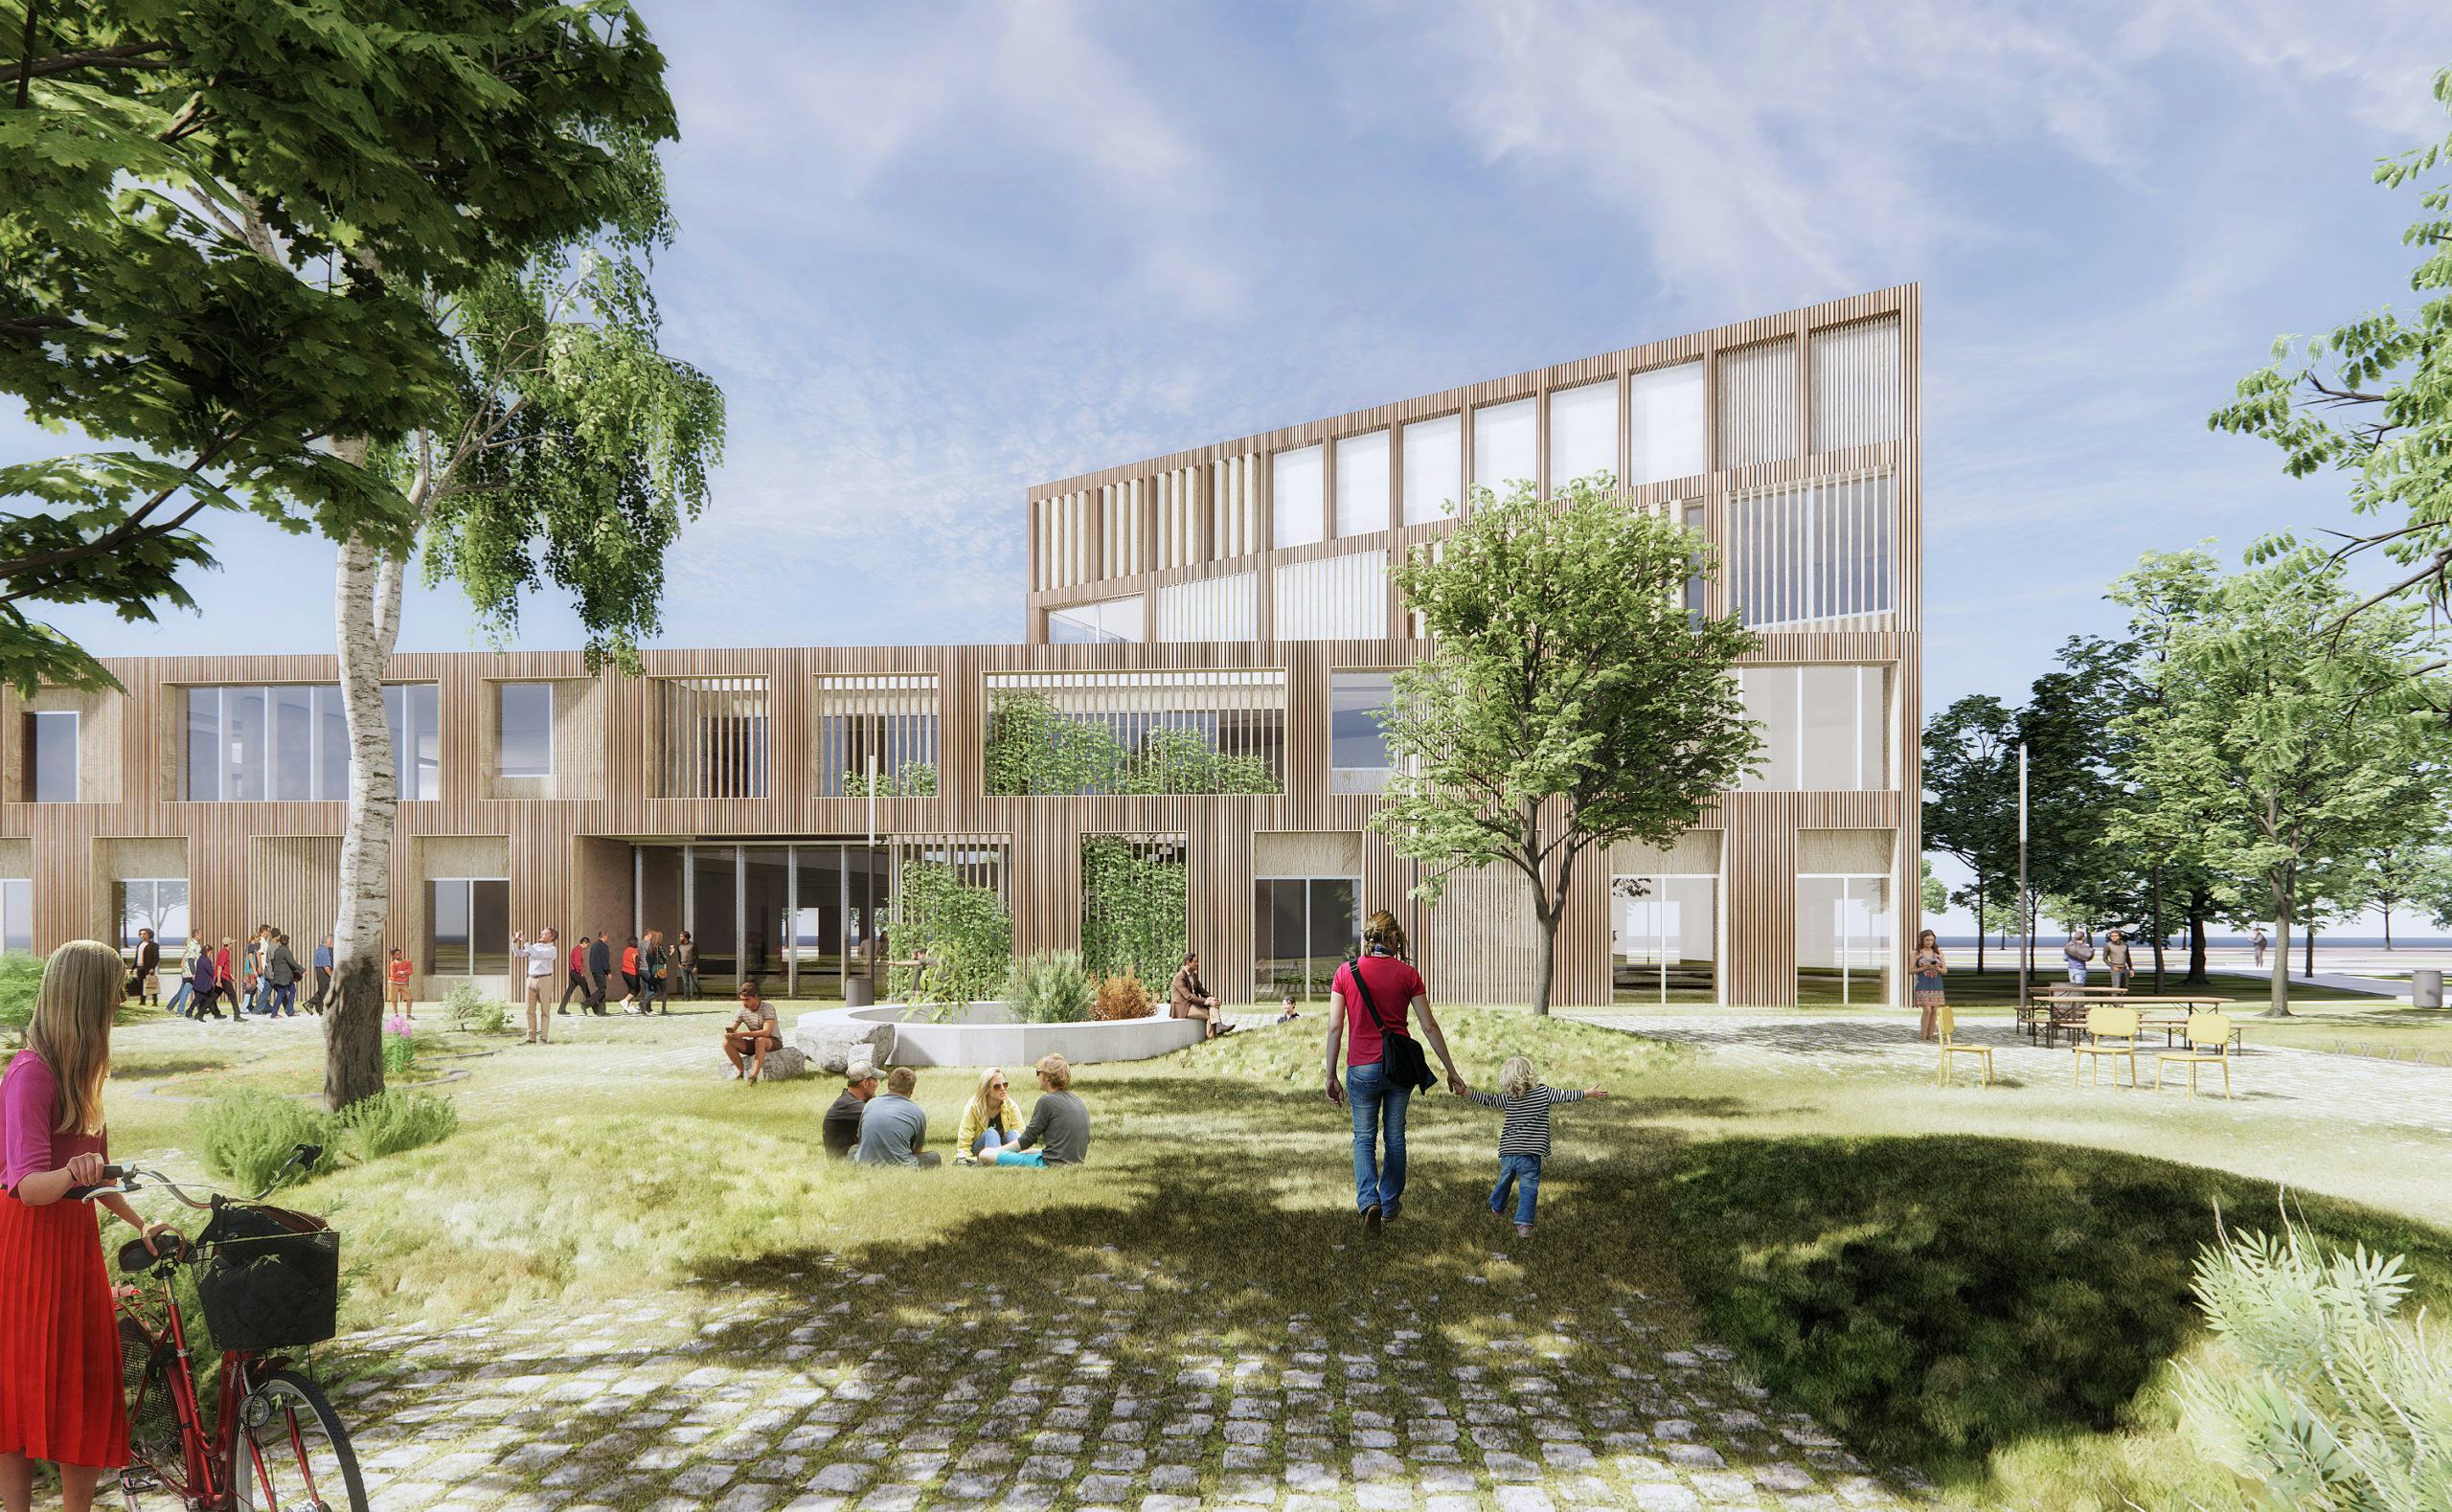 Impressie MY college in Spijkenisse door Christensen & Co en NEXT architects